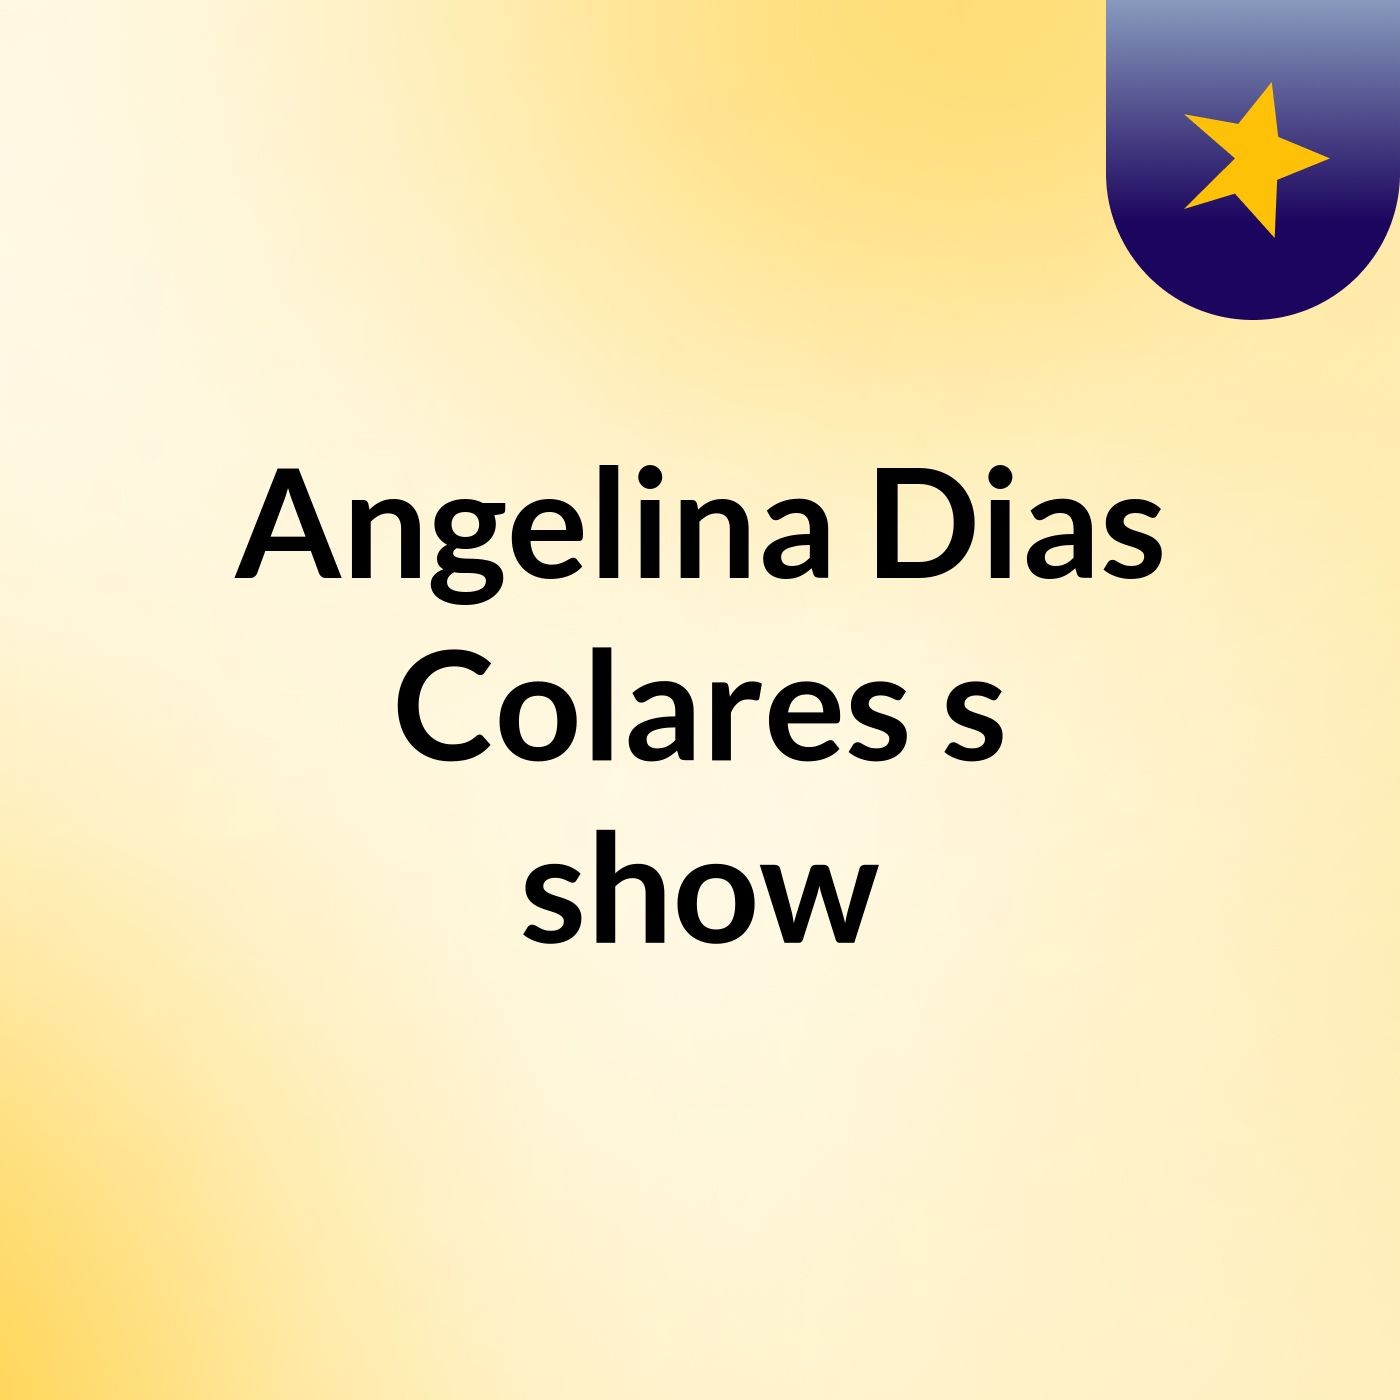 Angelina Dias Colares's show